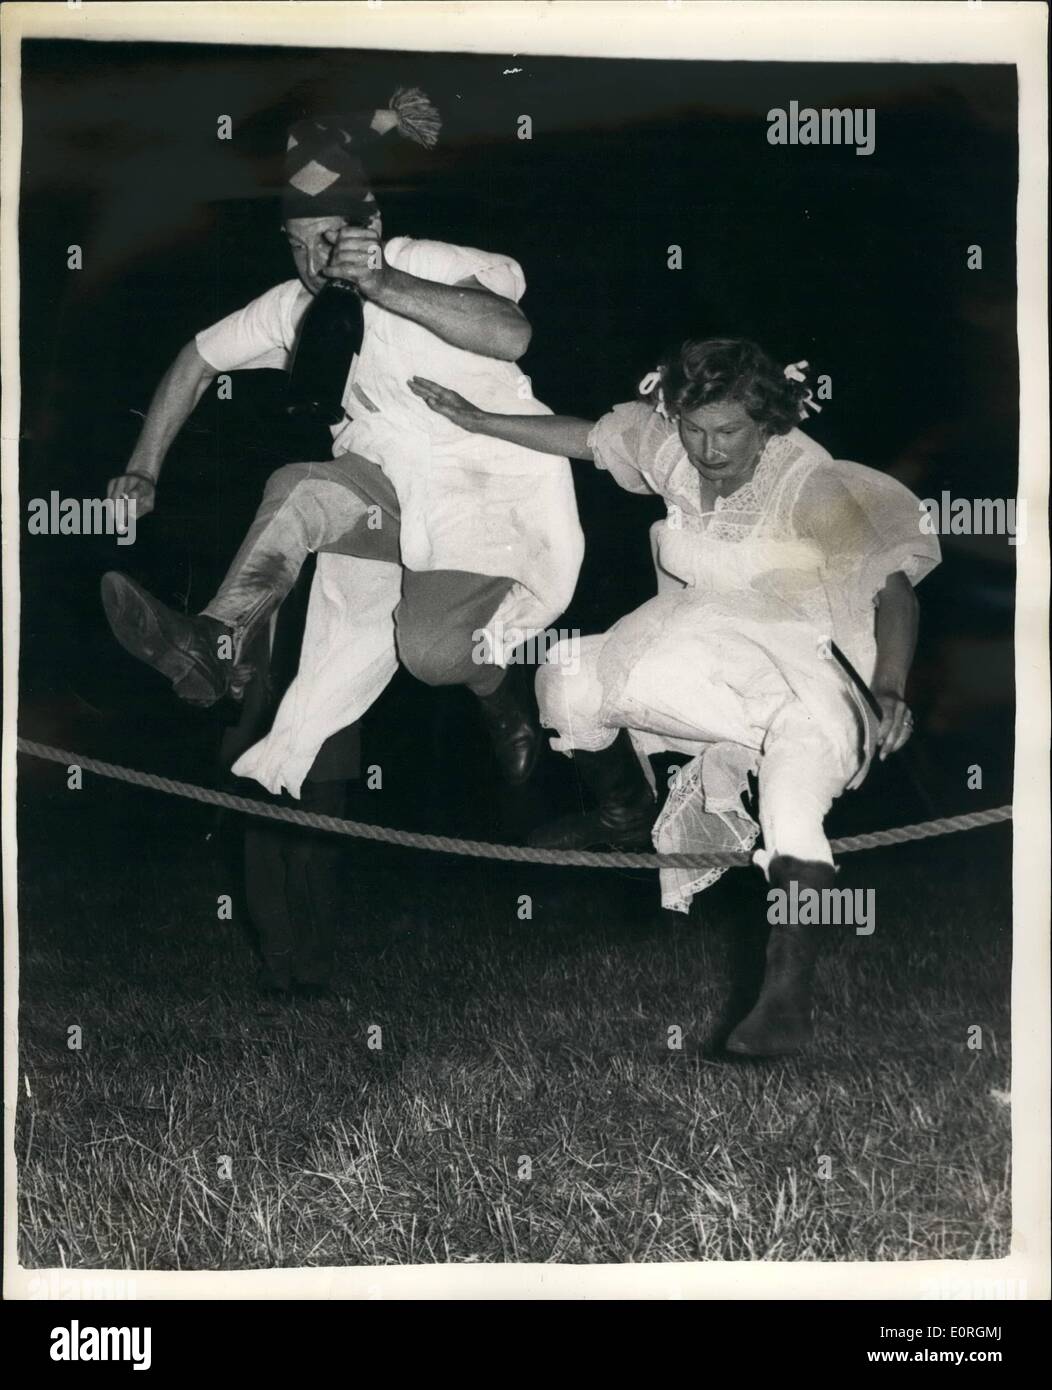 7. Juli 1959 - Nachthemd Treffen der South Berkshire Jagd; Männer trugen  Nachthemd und Frau Nylon Nachthemden, wenn sie teilgenommen haben  Stockfotografie - Alamy